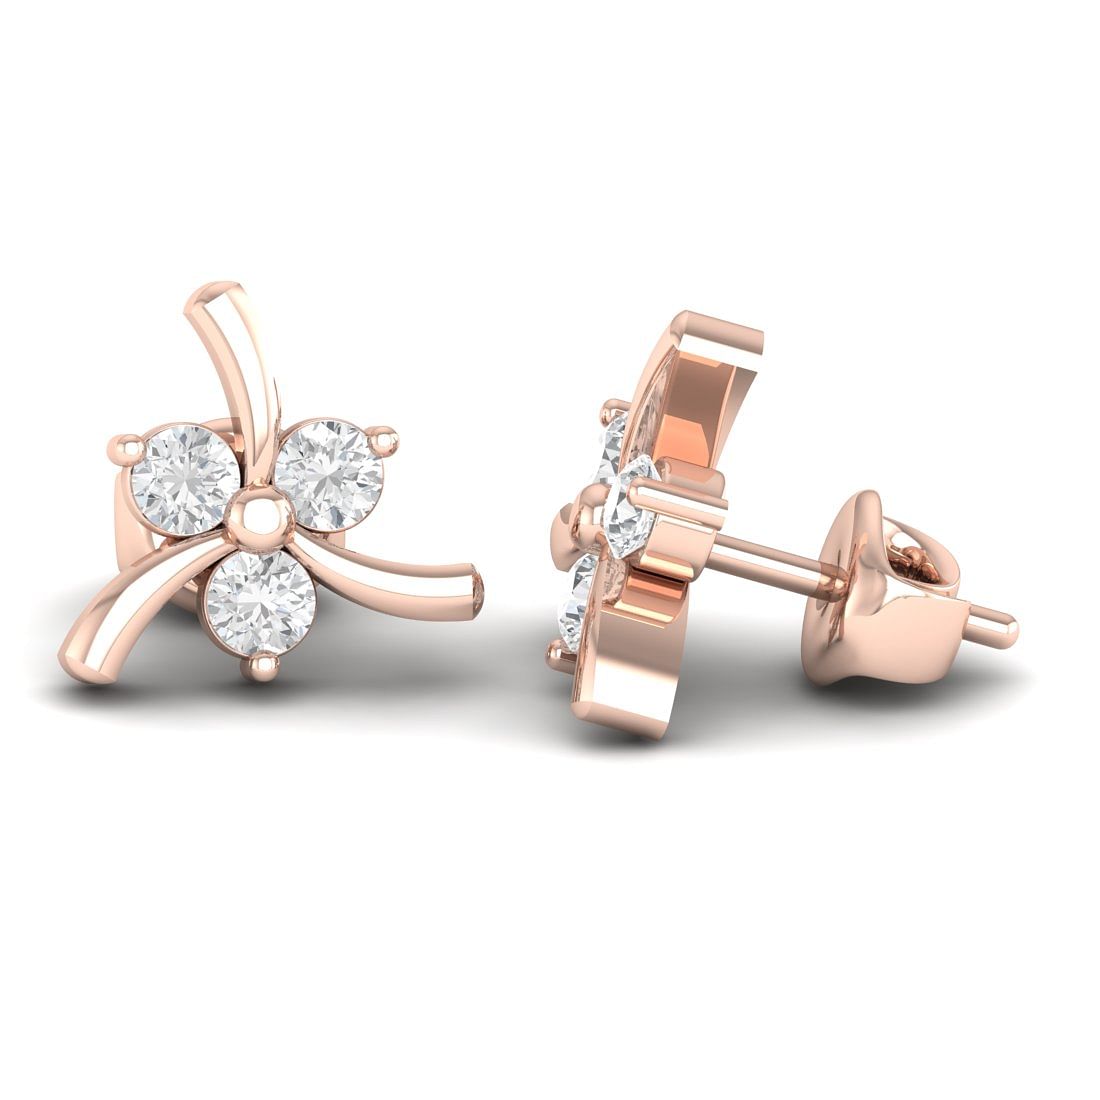 18k Rose Gold Pari Fancy Diamond Stud Earrings for daily wear